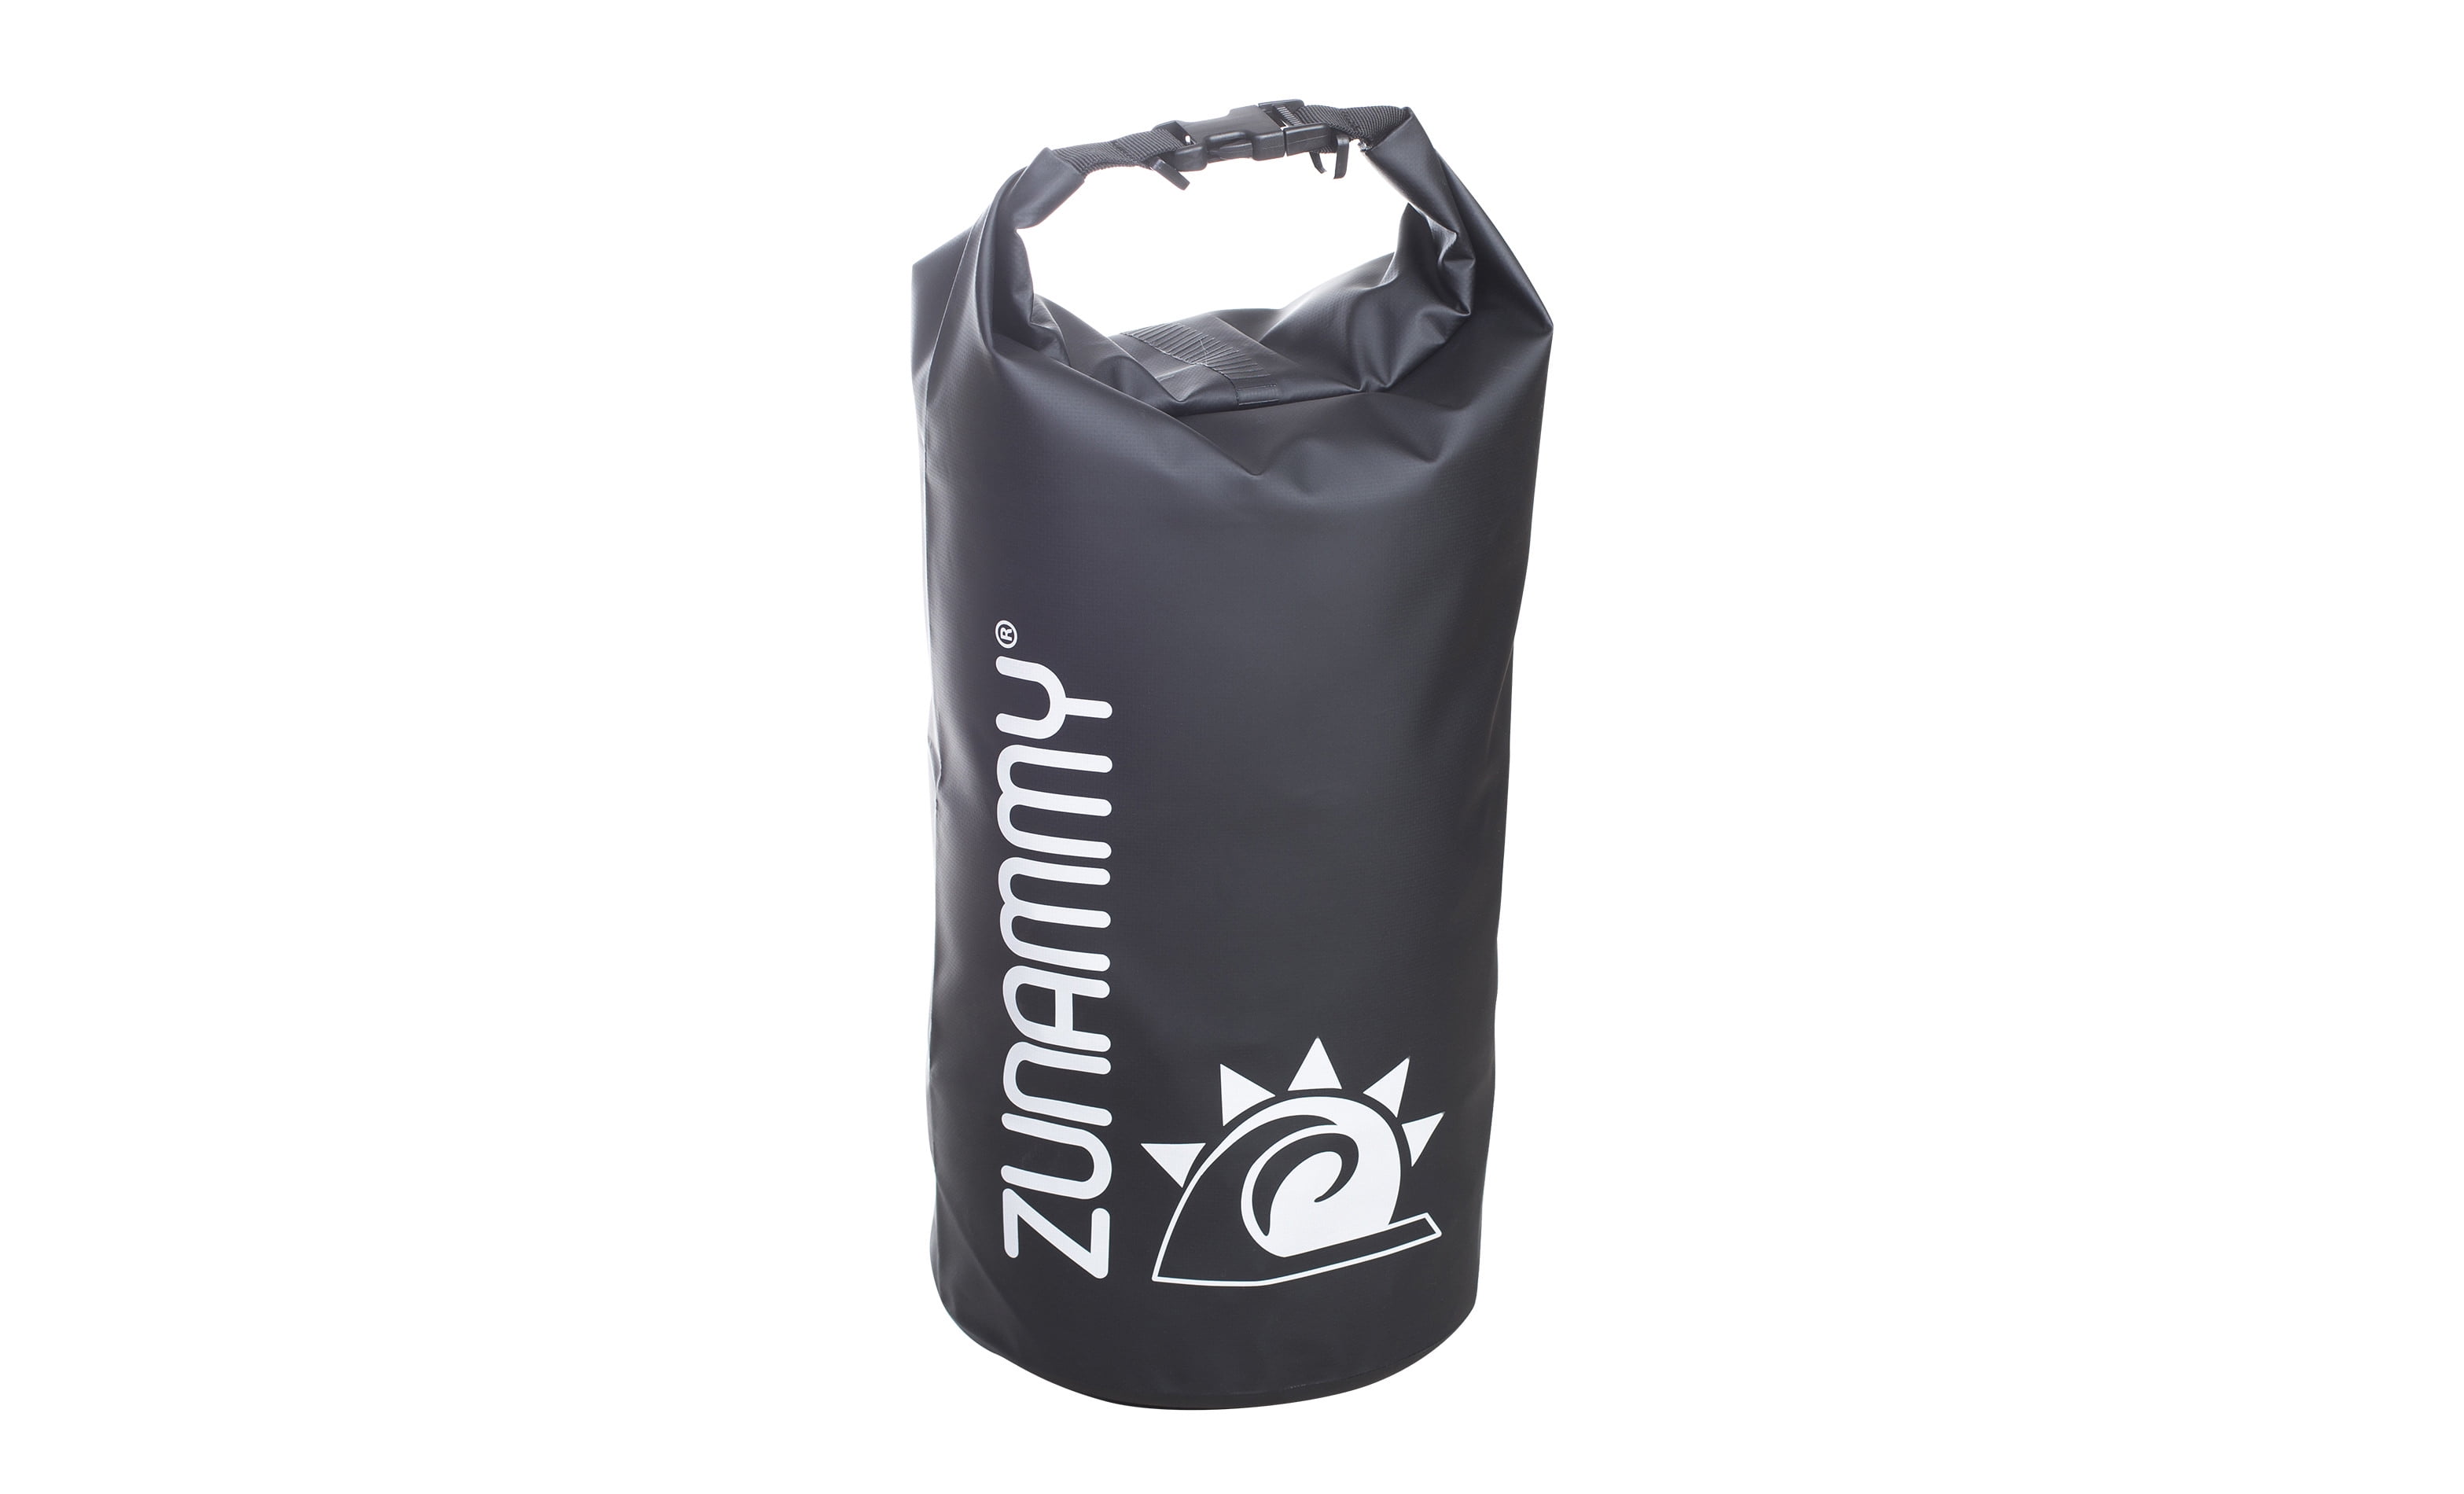 Details about   Zunammy 5 Liter Waterproof Dry Bag